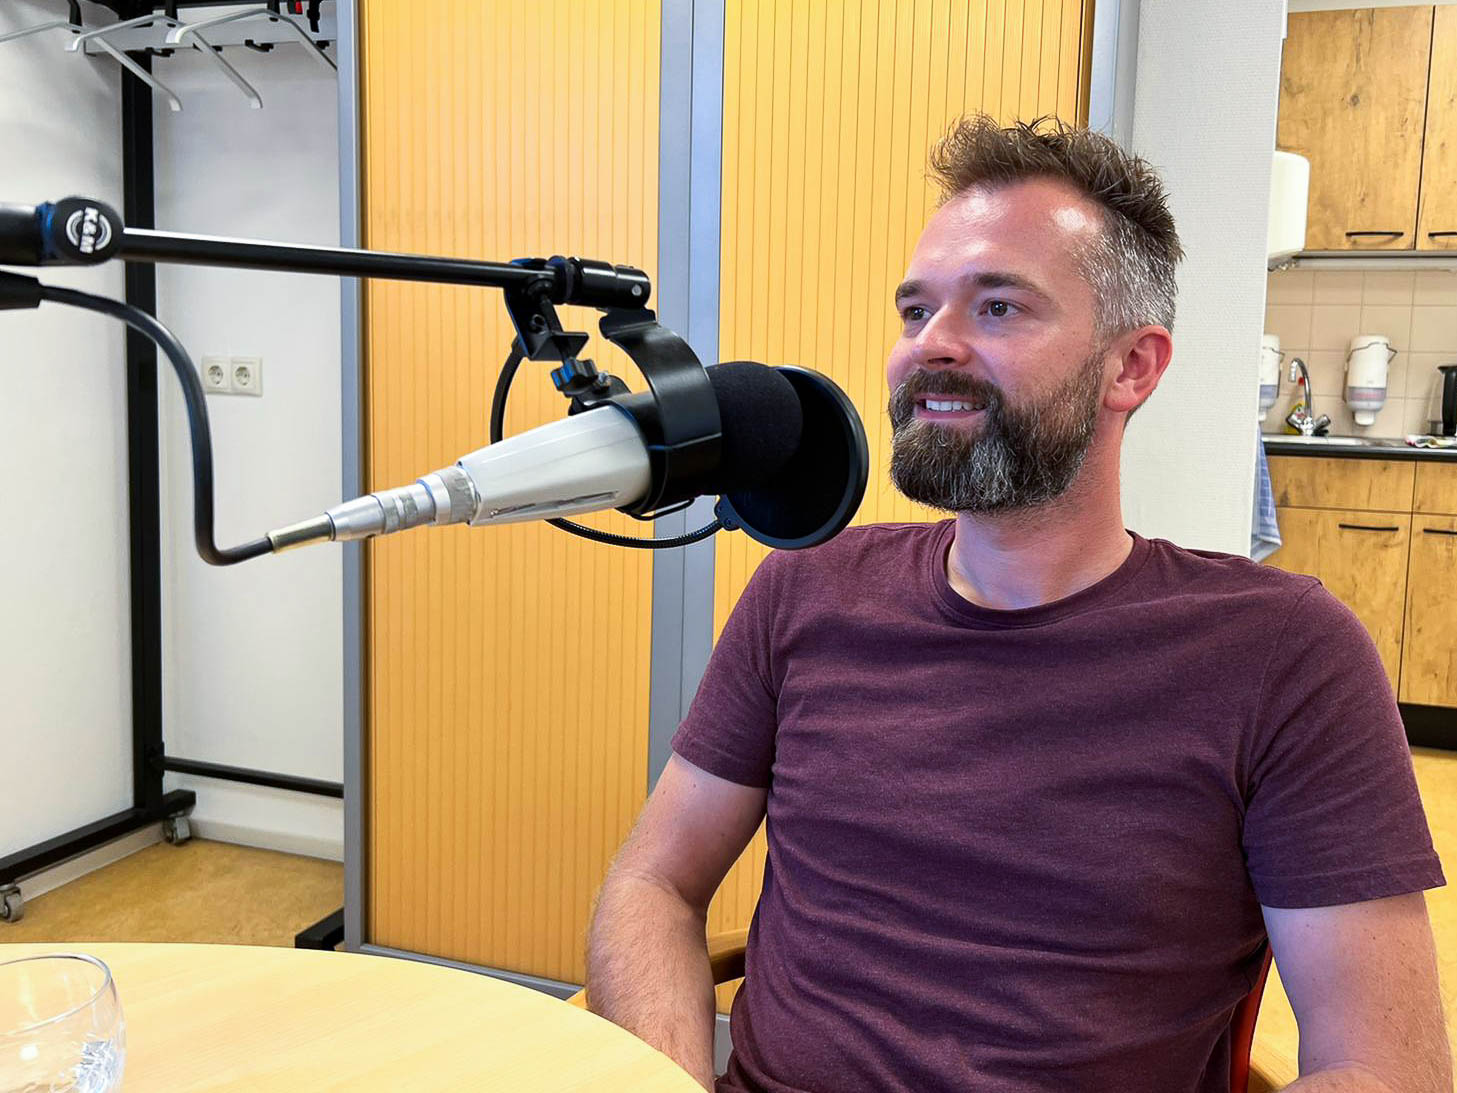 Lennert van den Berg at radio show for Omroep Wetering 